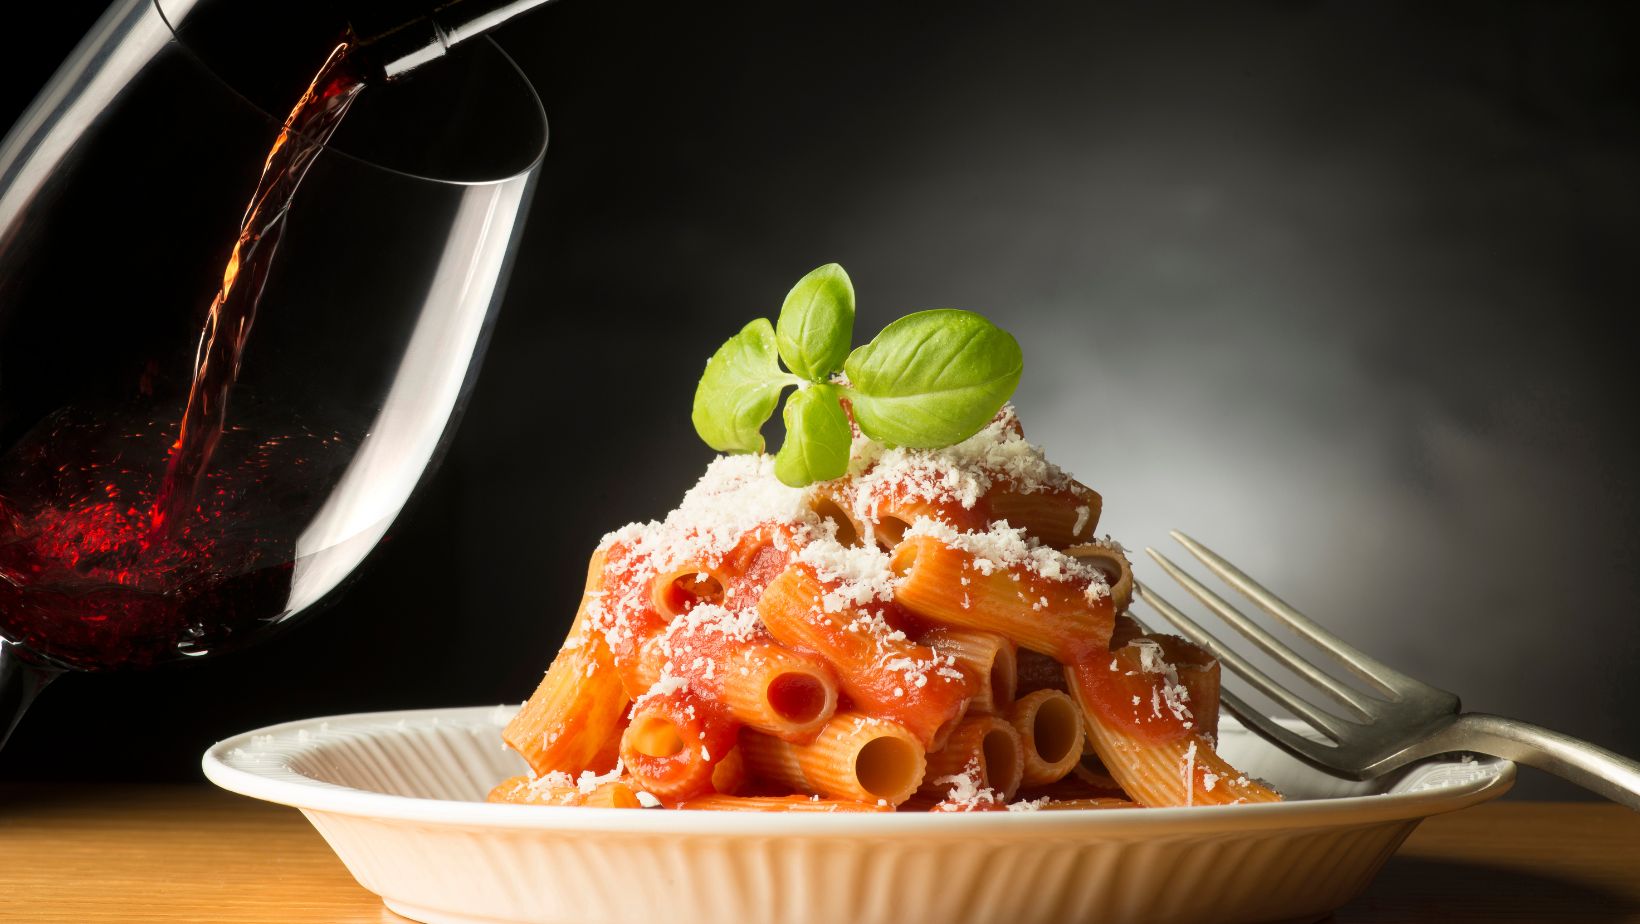 Featured image for “Vin et menu italien”